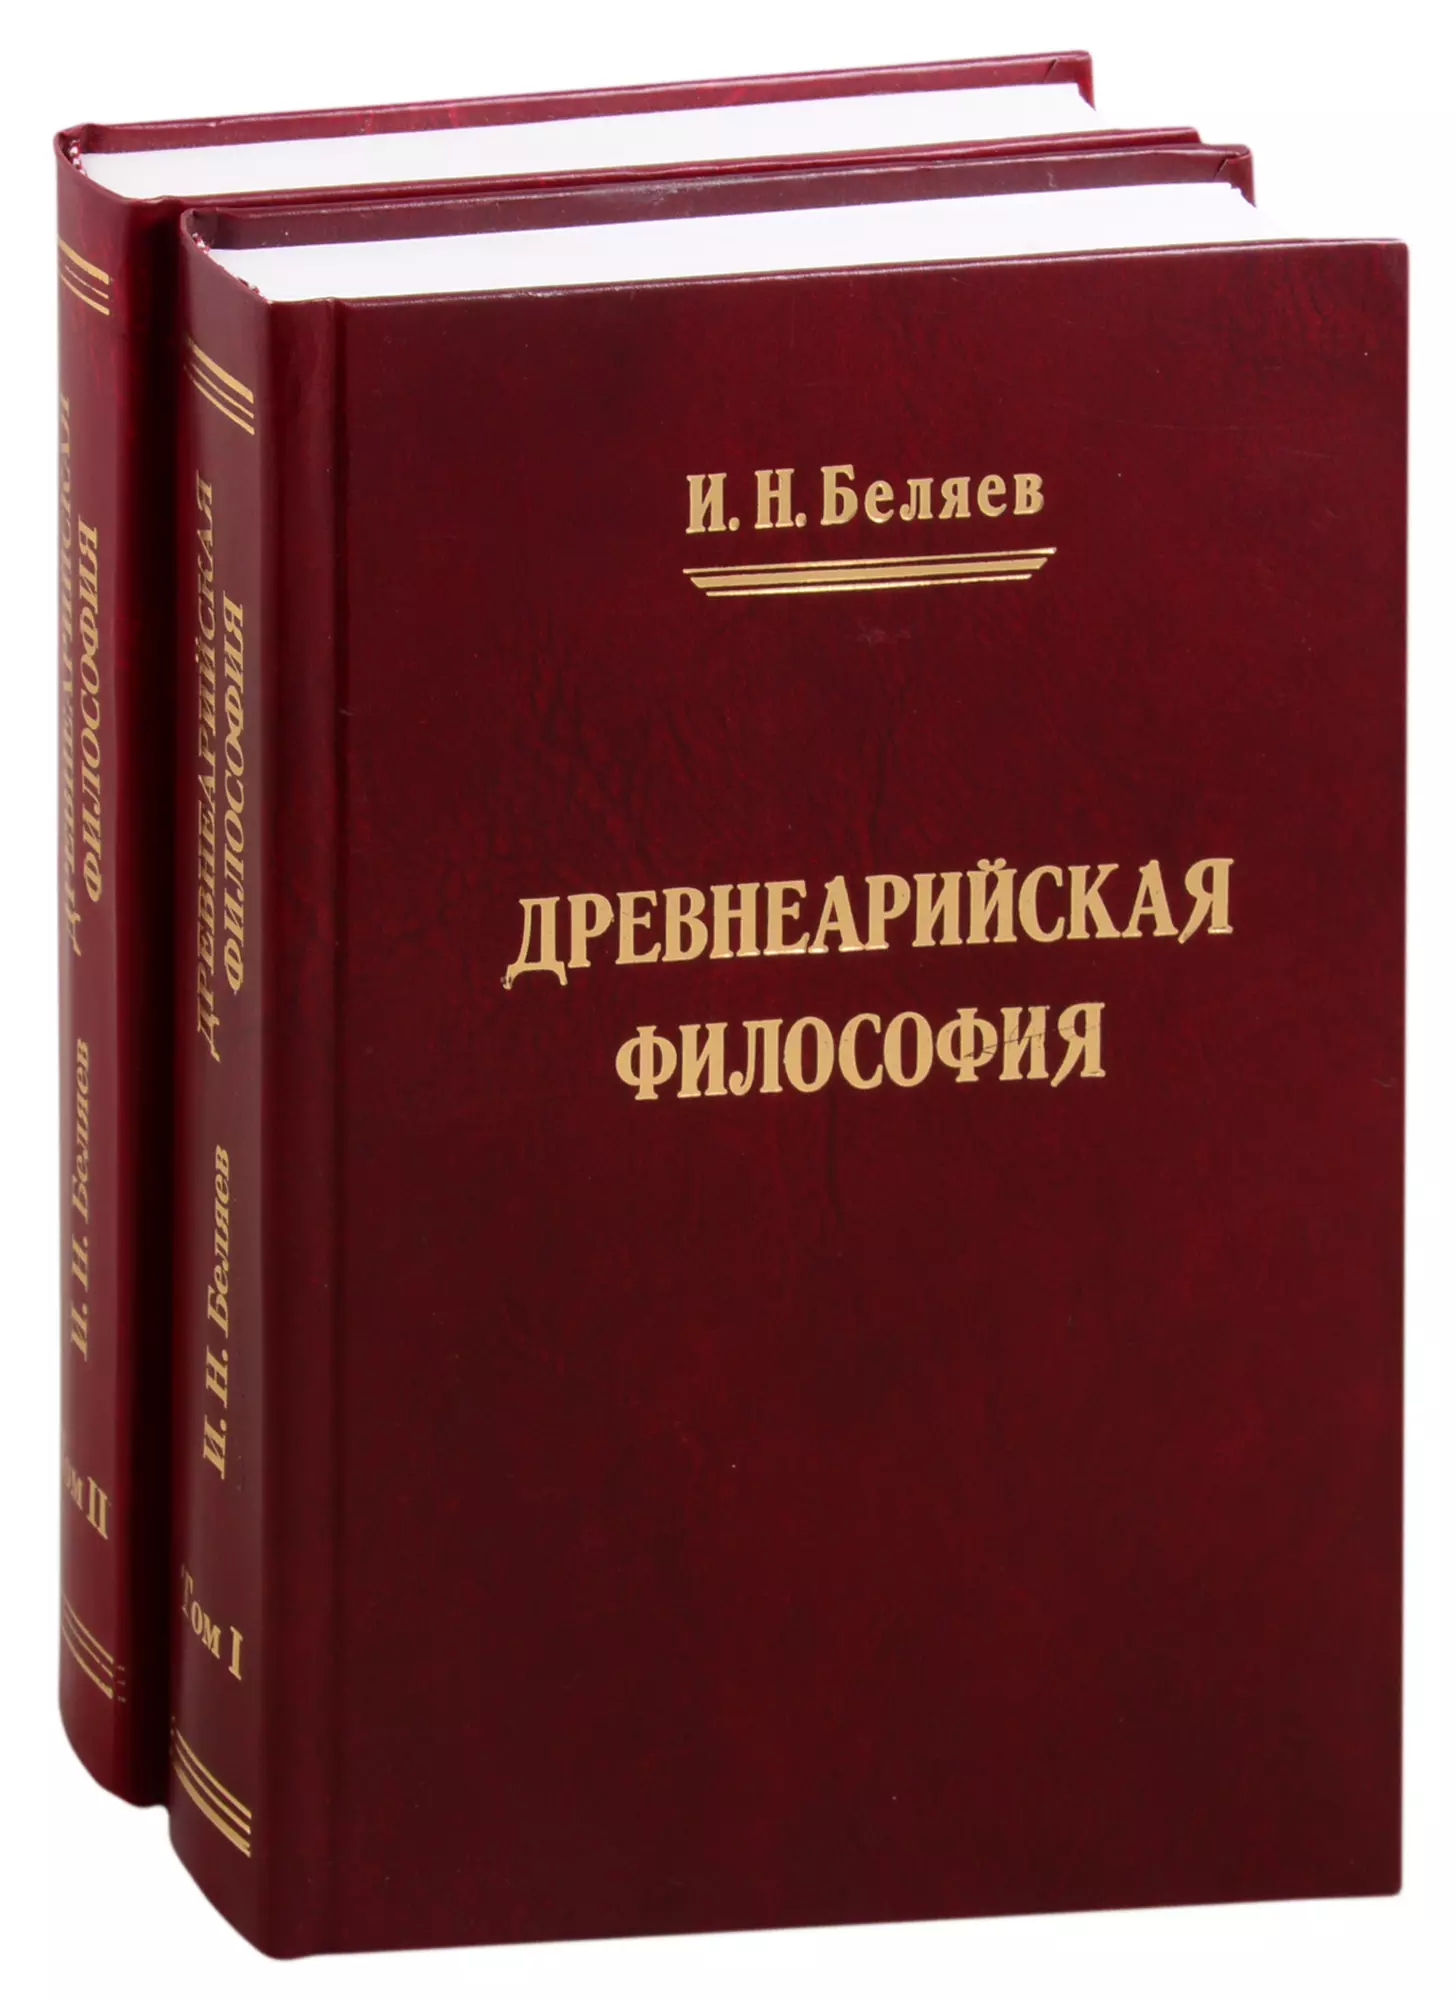 Беляев И. Н. Древнеарийская философия. Том 1. Том 2 (комплект из 2 книг)